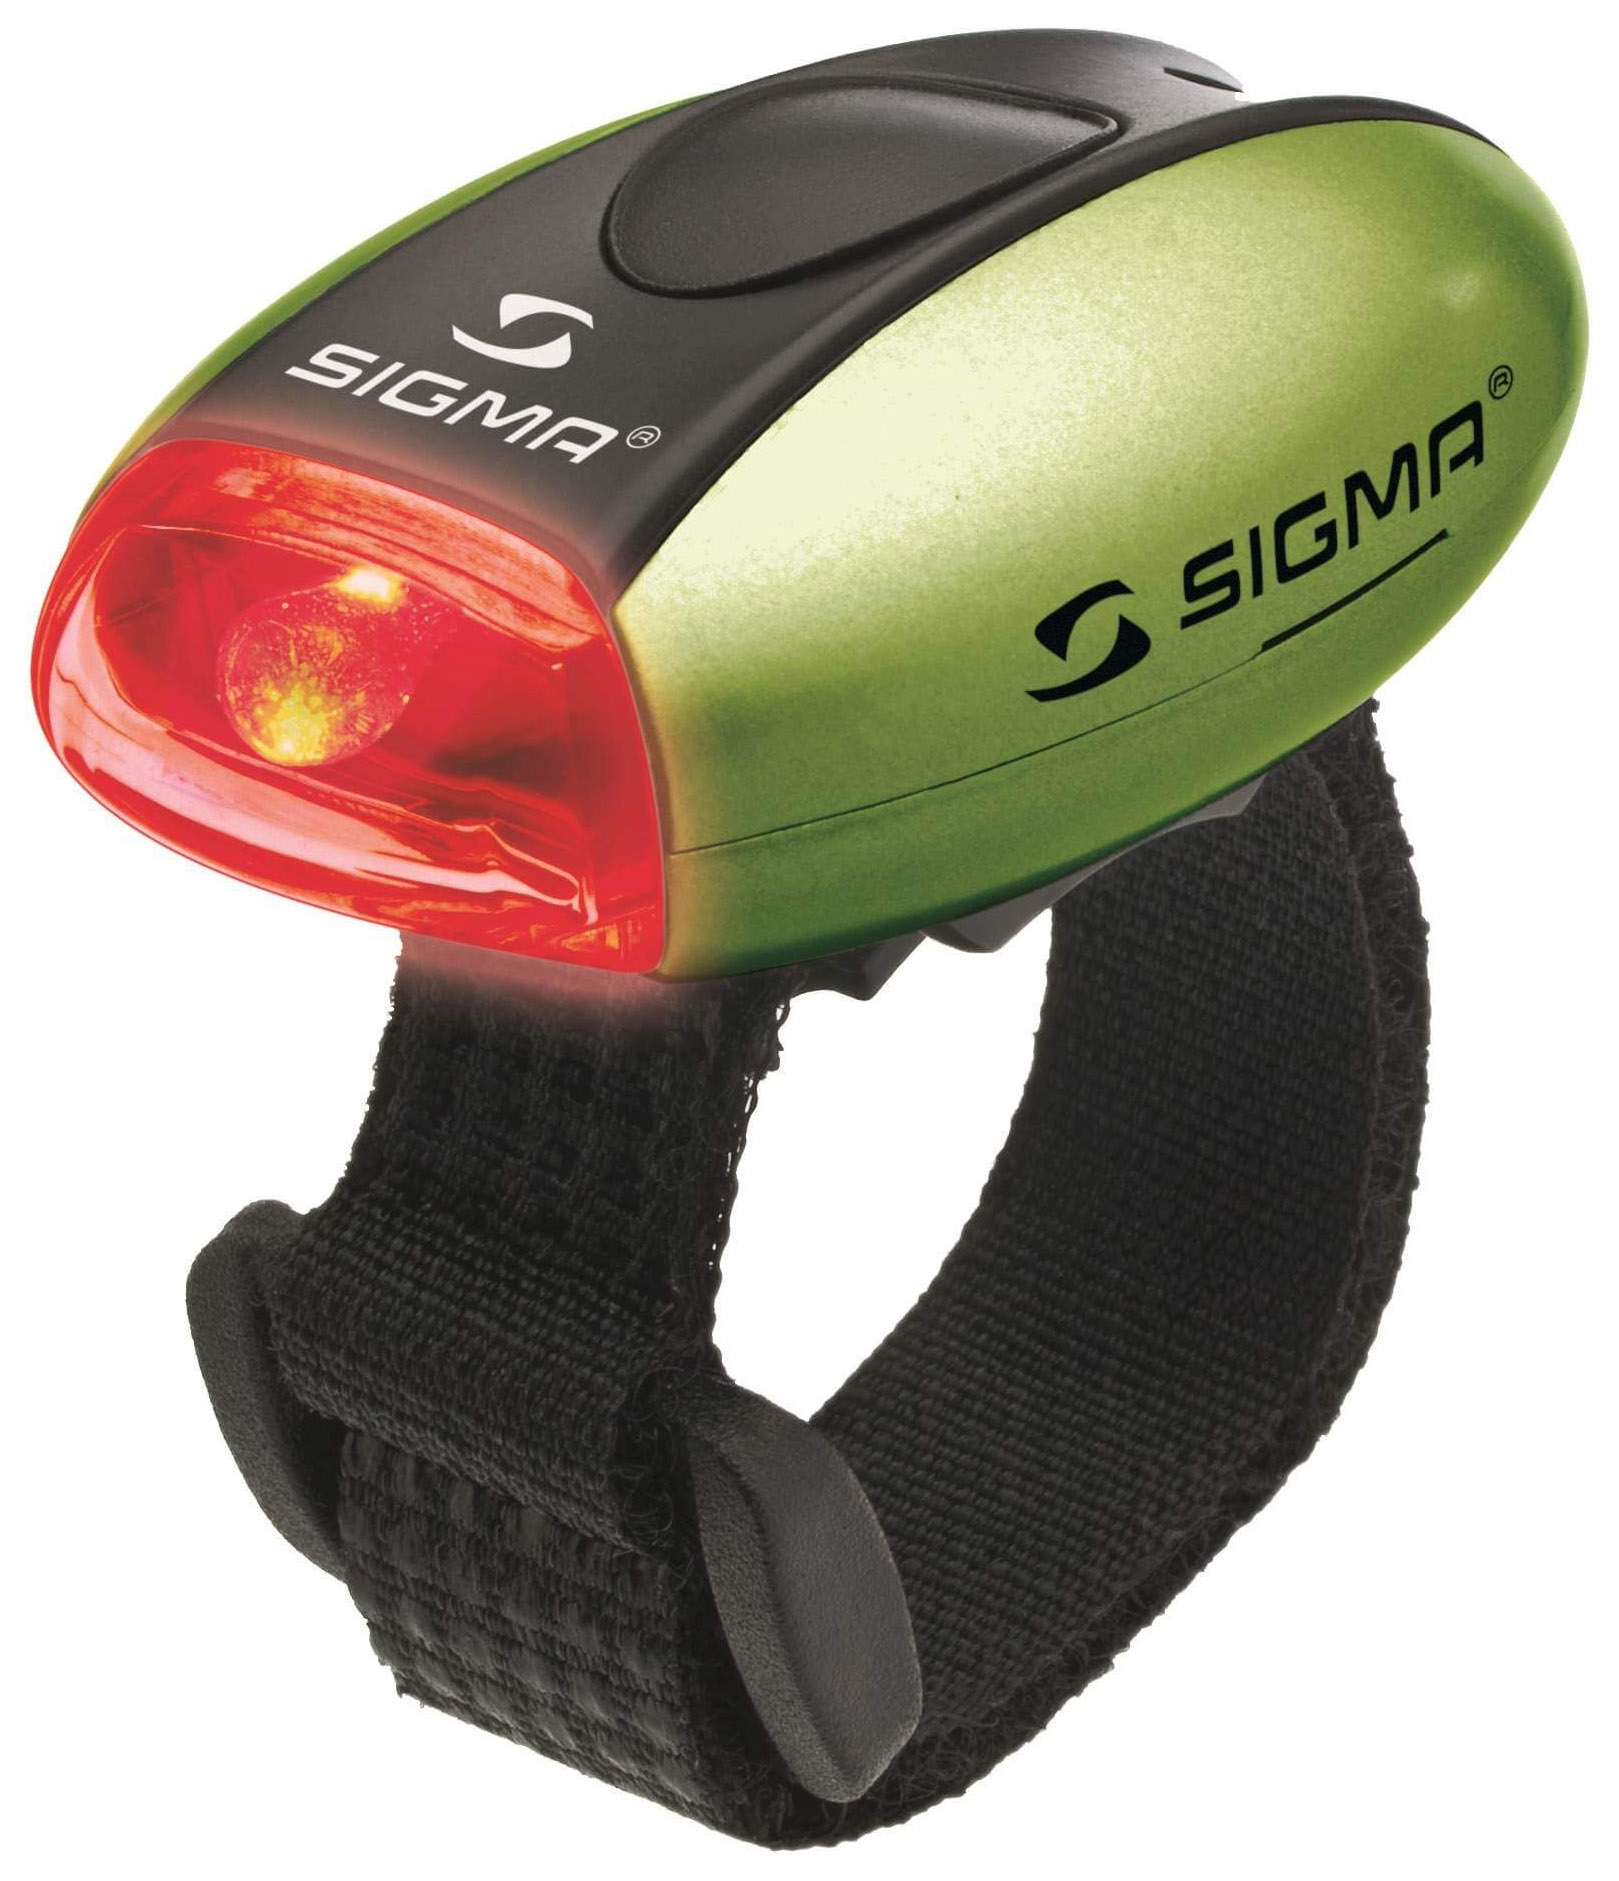  Задний фонарь для велосипеда SIGMA Micro R